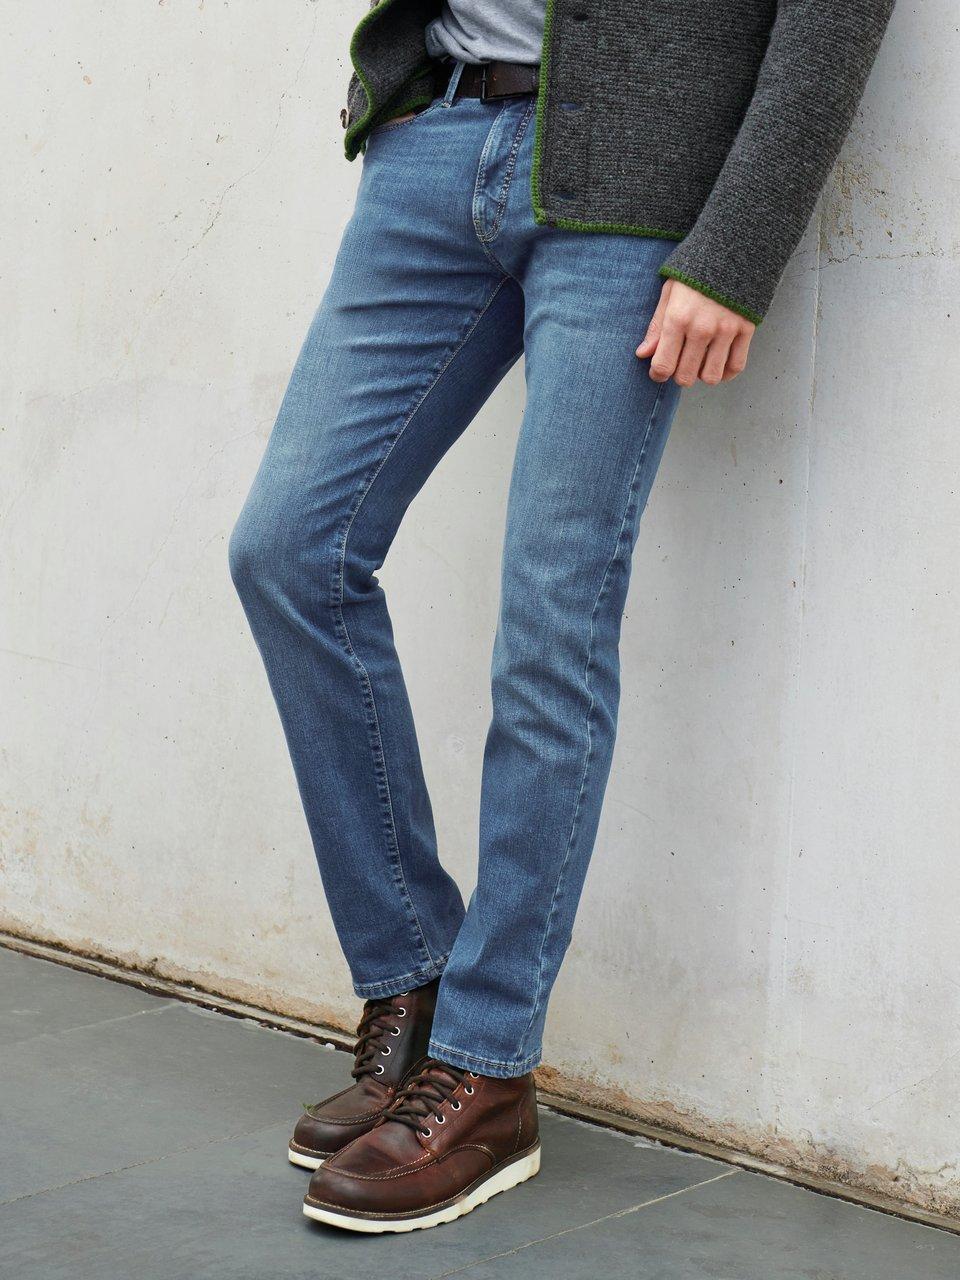 Kelder Soepel pit Pierre Cardin - Modern Fit-jeans model Lyon Tapered - blue-denim